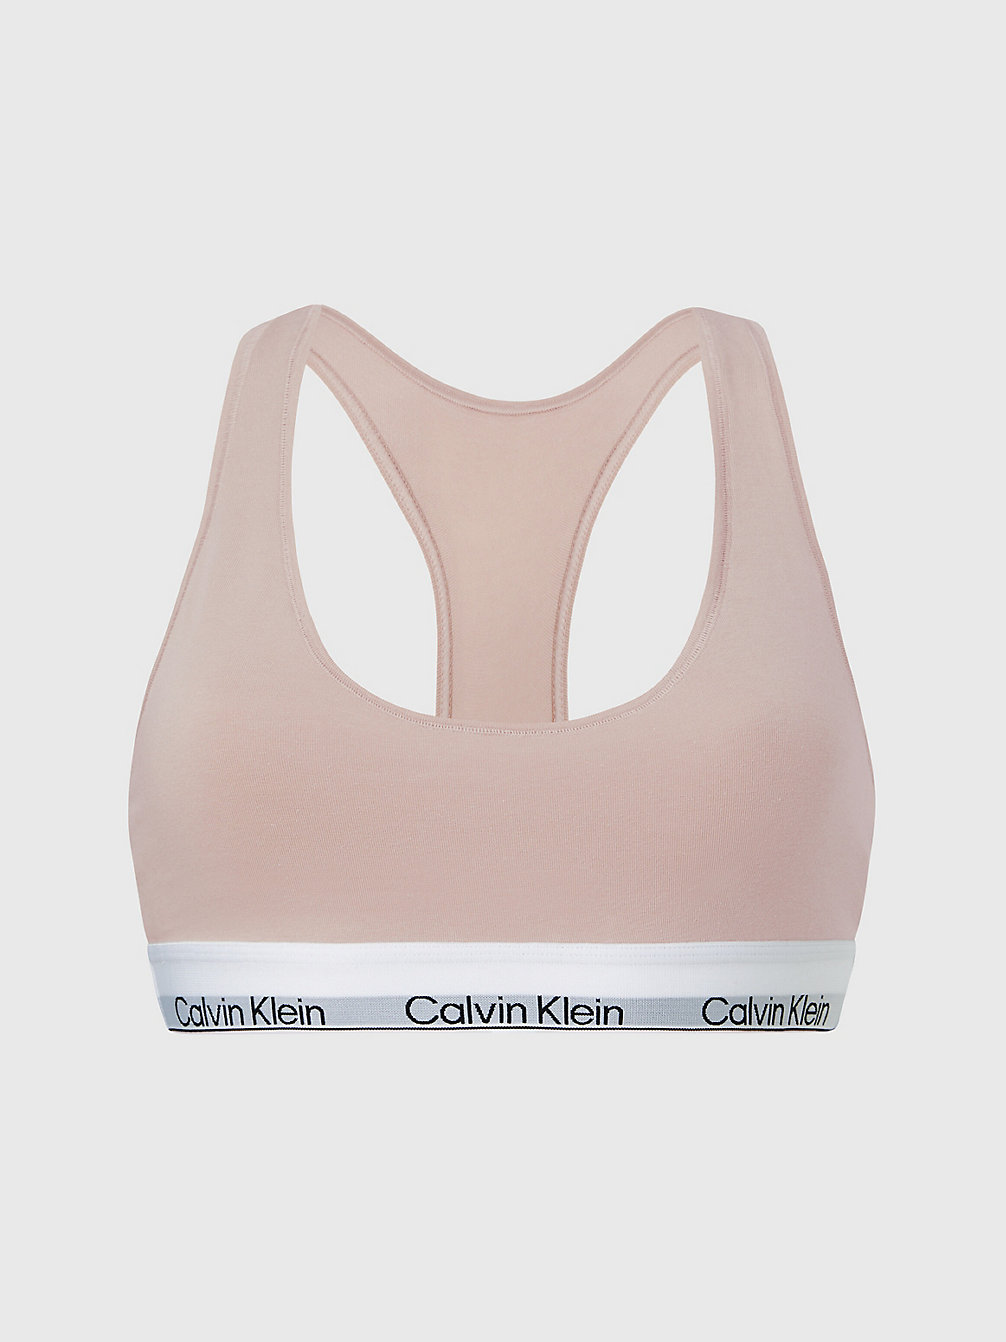 CEDAR > Bralette – Modern Cotton > undefined Damen - Calvin Klein